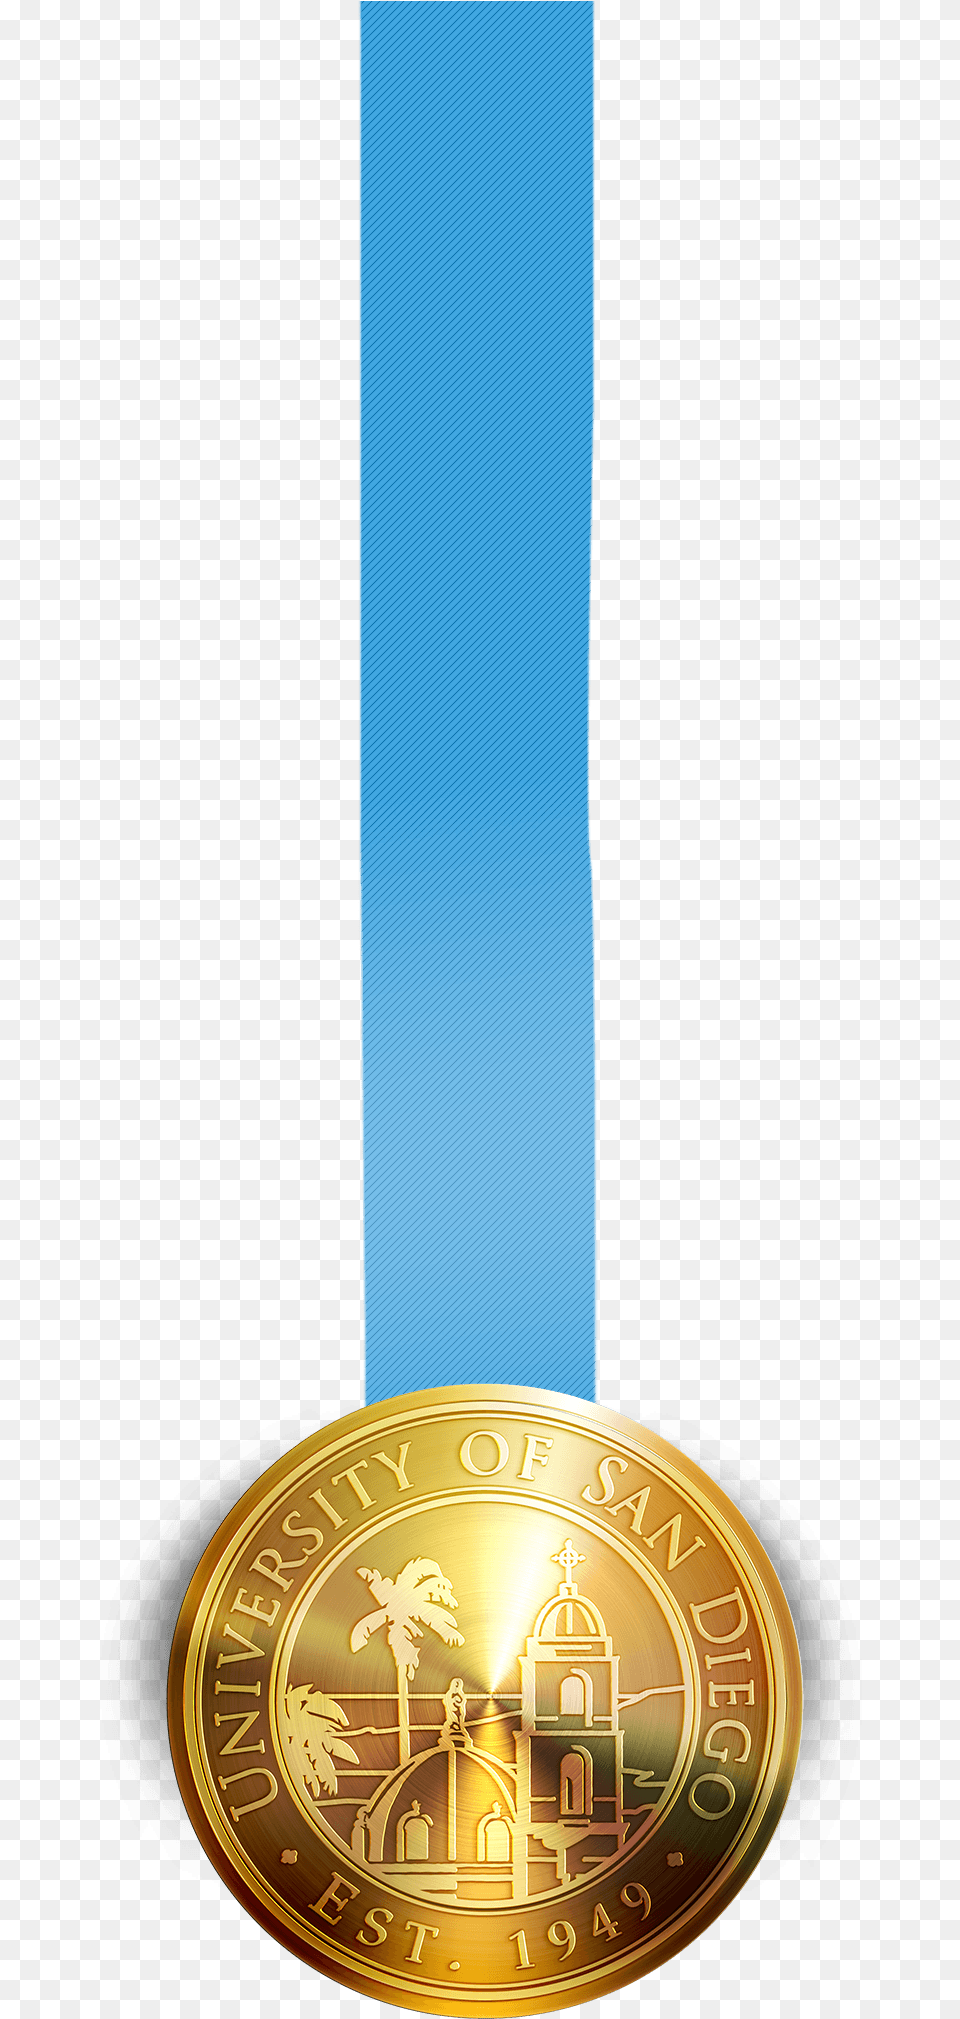 Transparent Olympic Medal Gold Medal, Gold Medal, Trophy Png Image